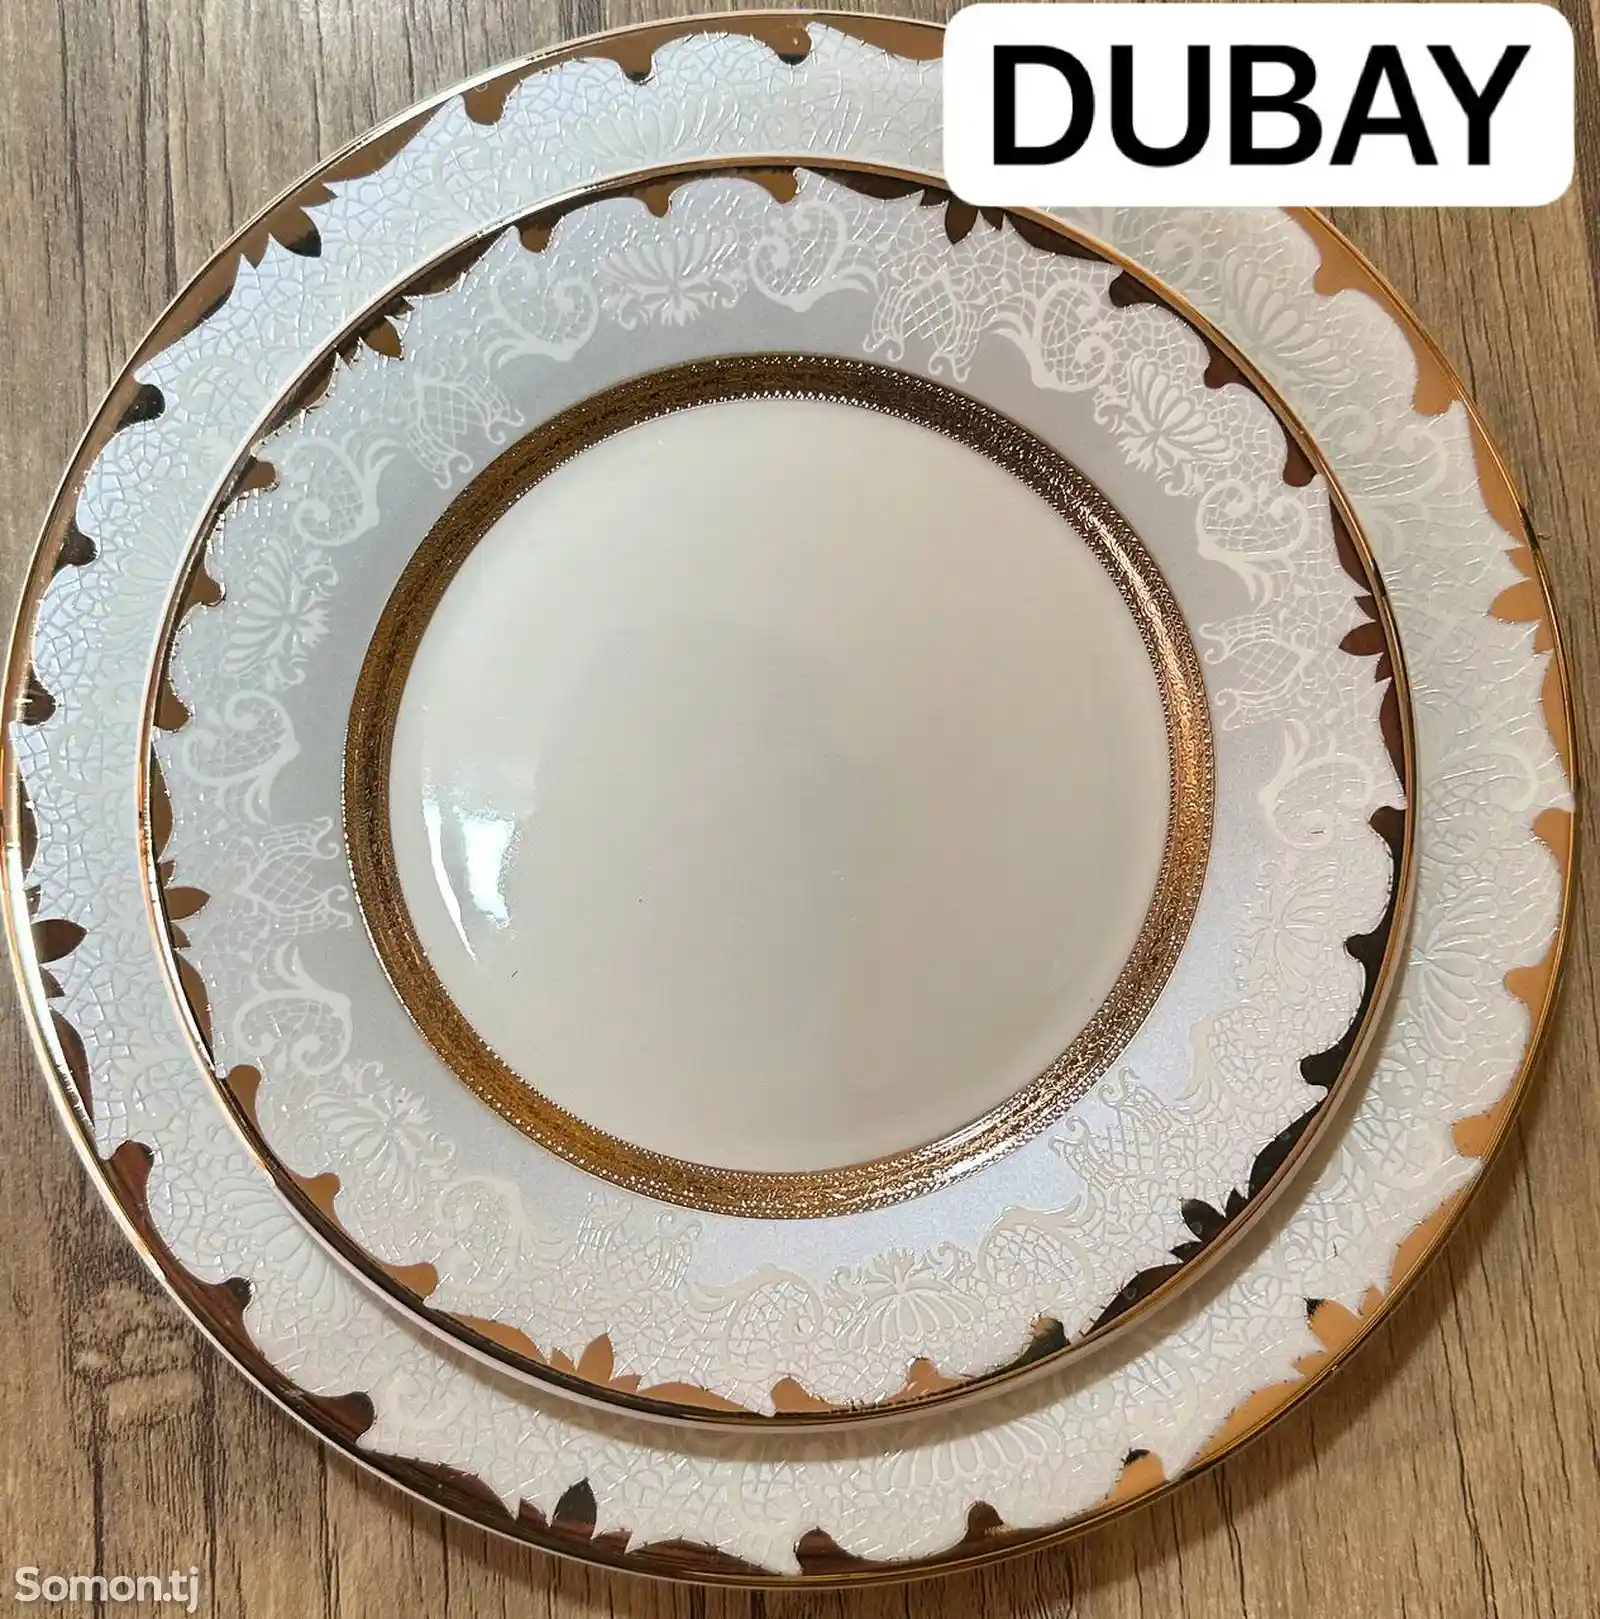 Набор посуды Dubay-08 комплект 6-7